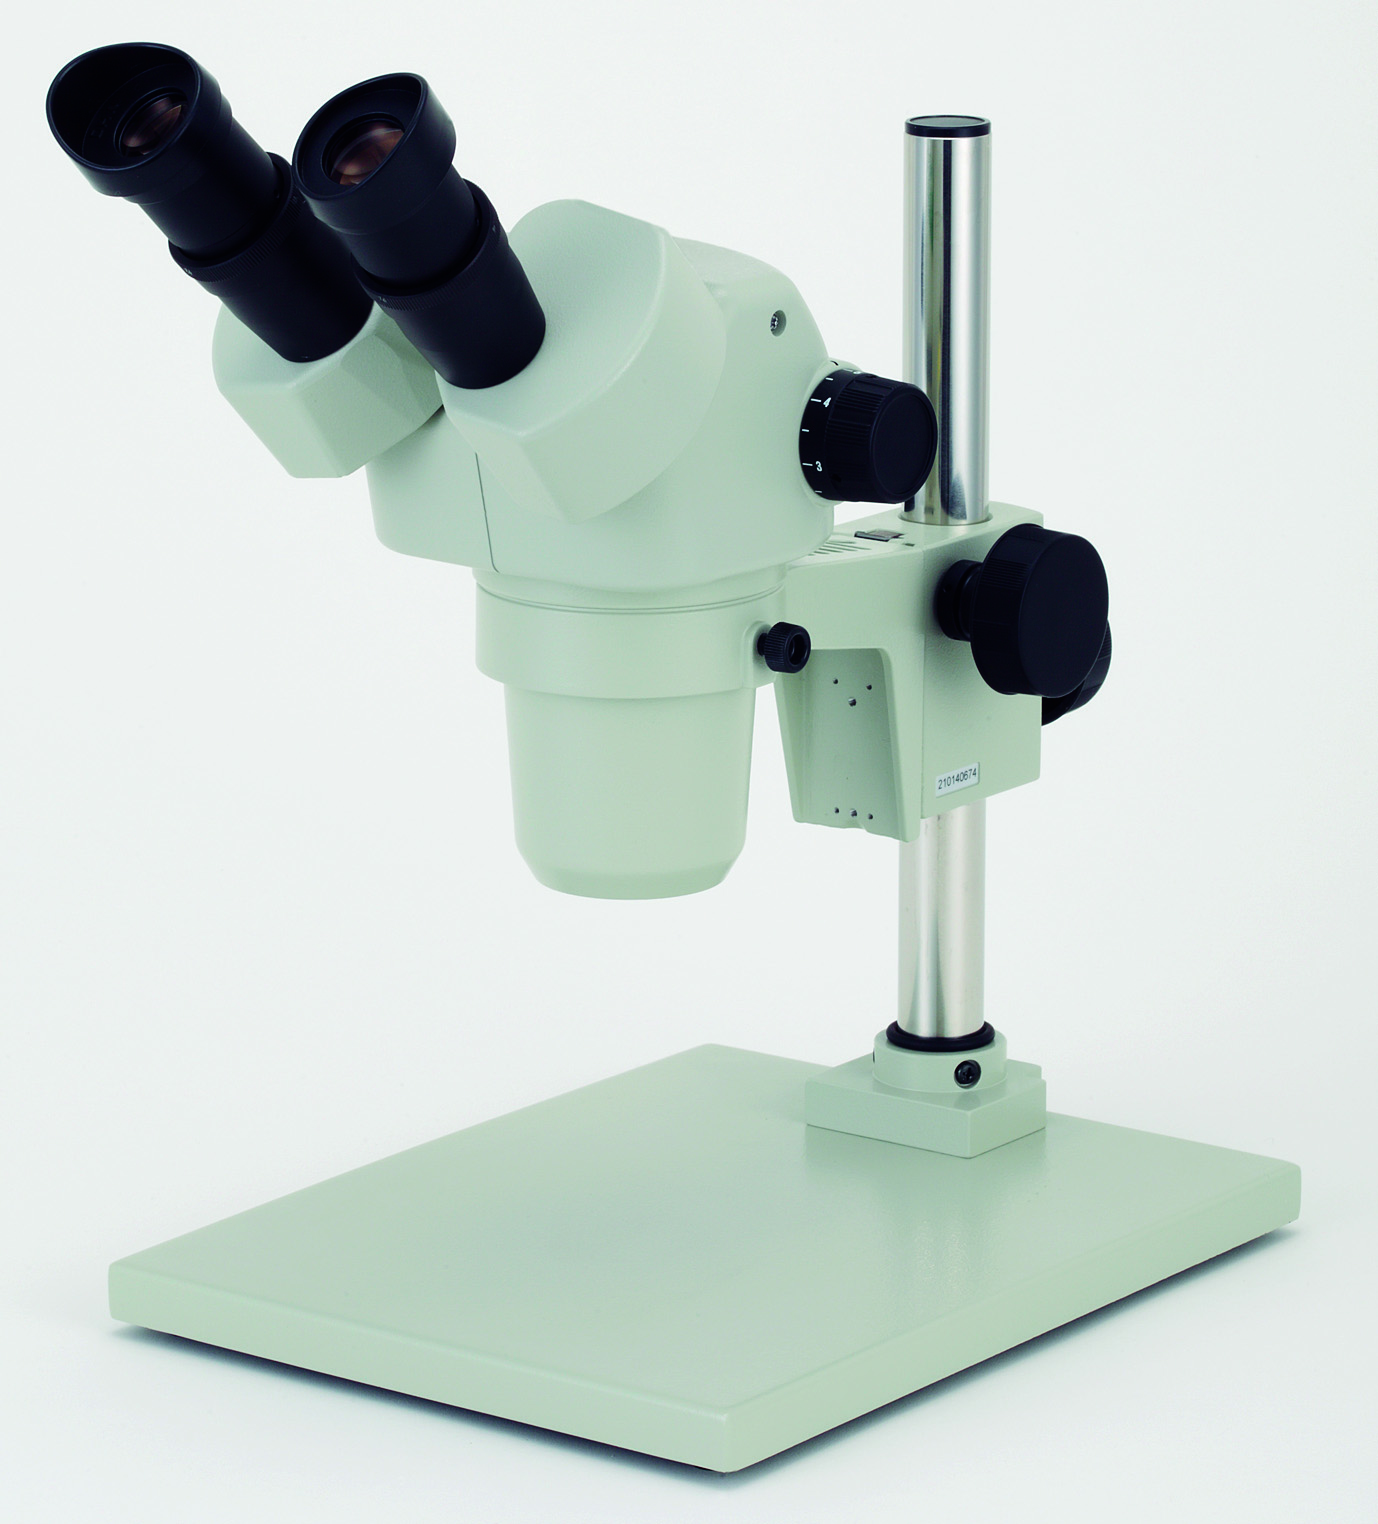 カートン光学 ズームシステム実体顕微鏡<双眼式> | コクゴeネット